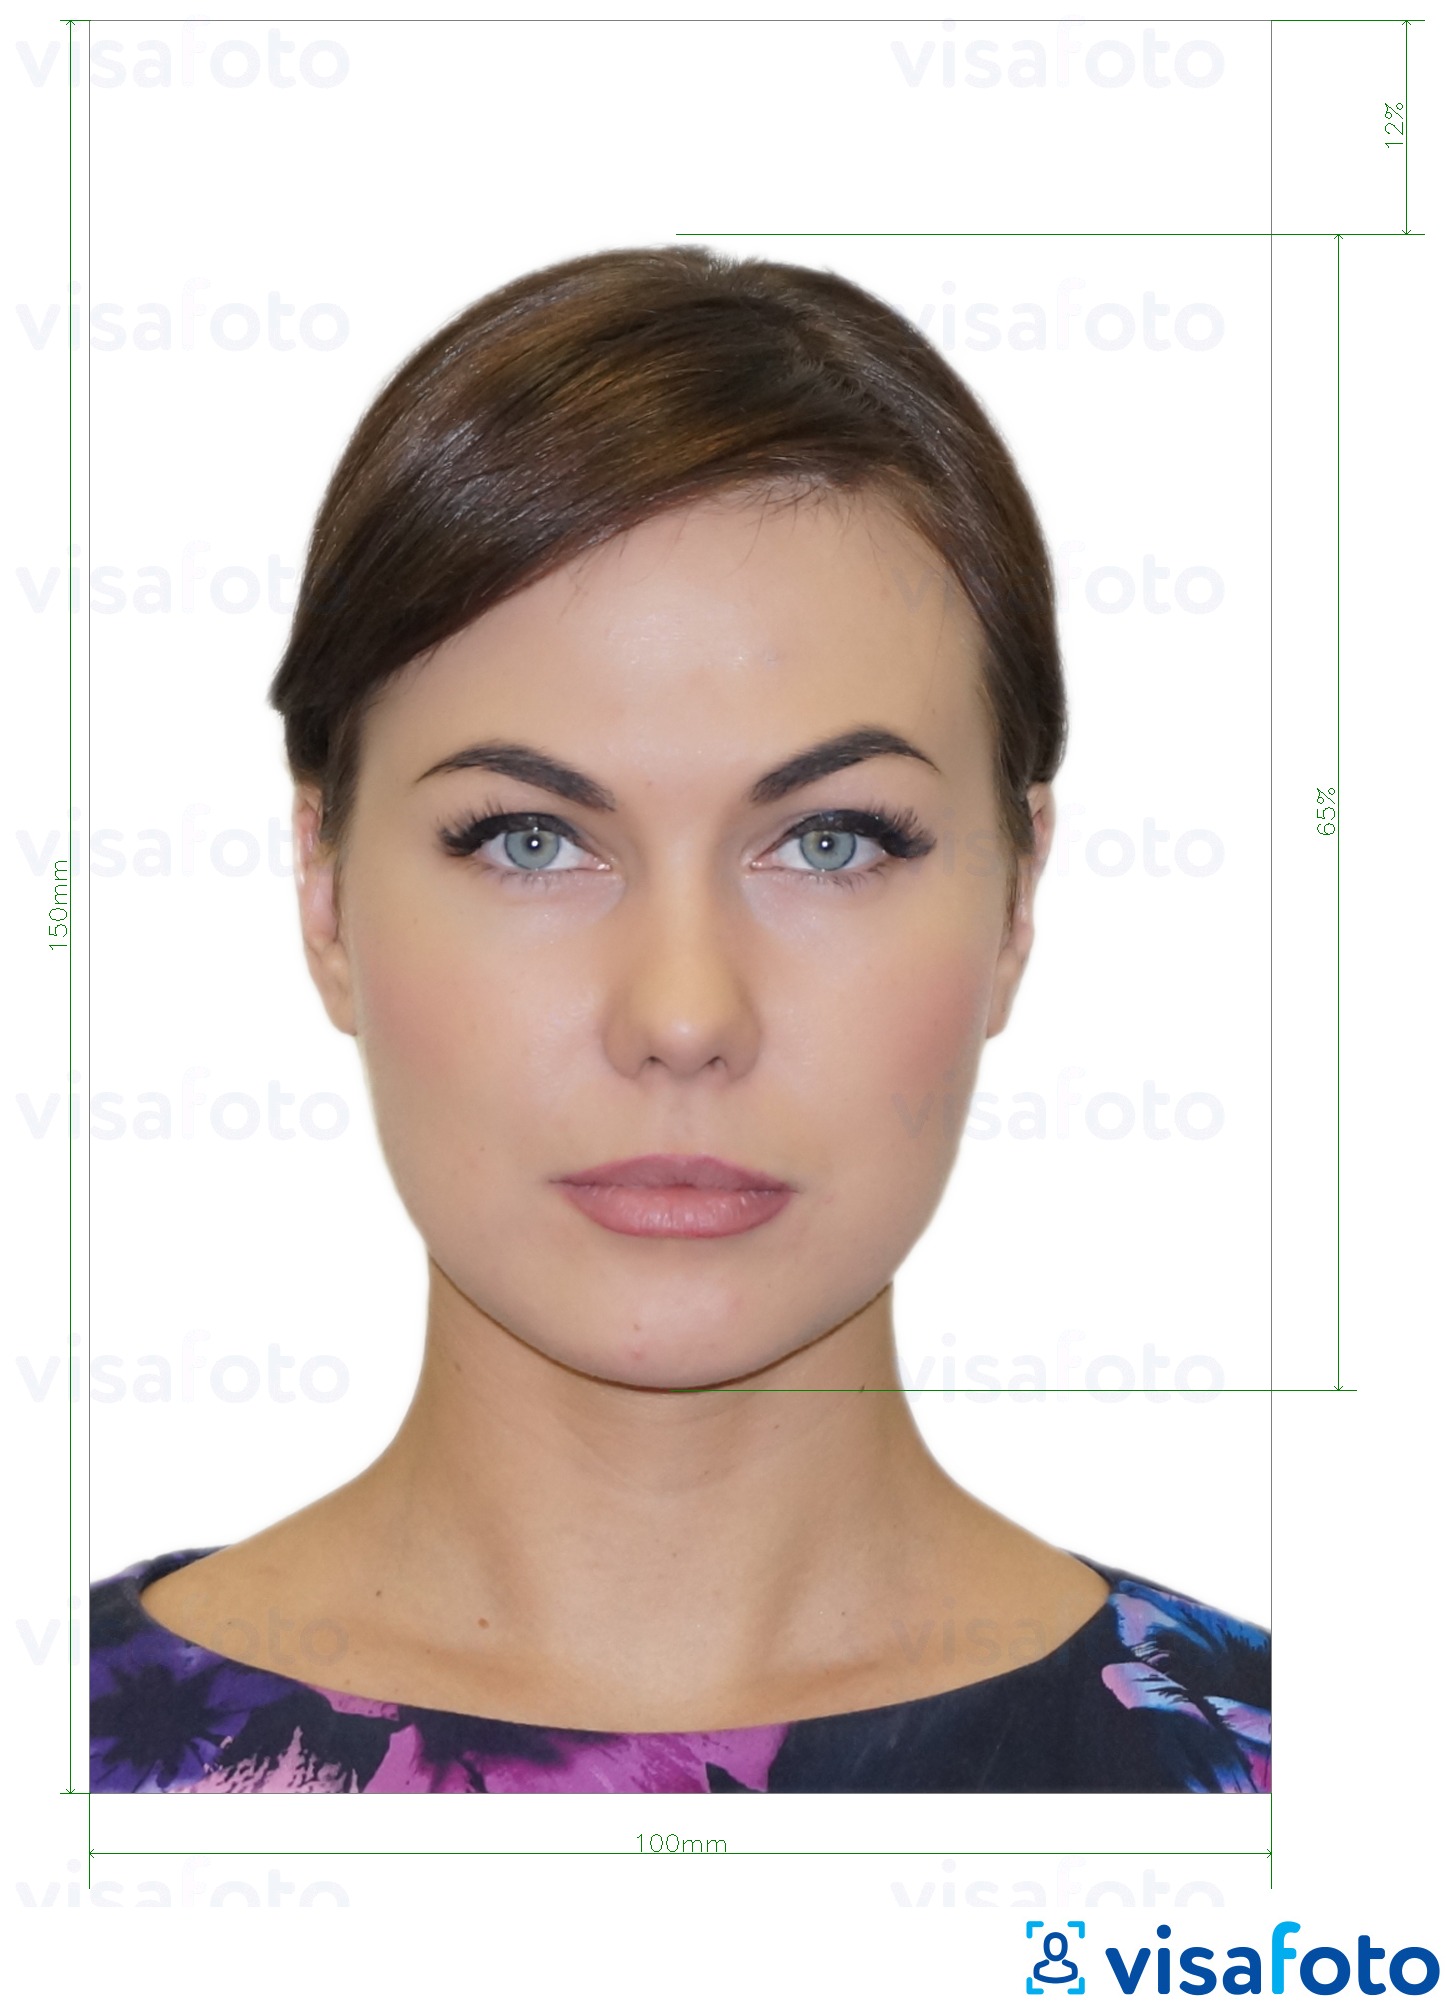 Příklad fotografie Průkaz totožnosti Moldavsko (Buletin de identitate) 10x15 cm s přesnou specifikací velikosti